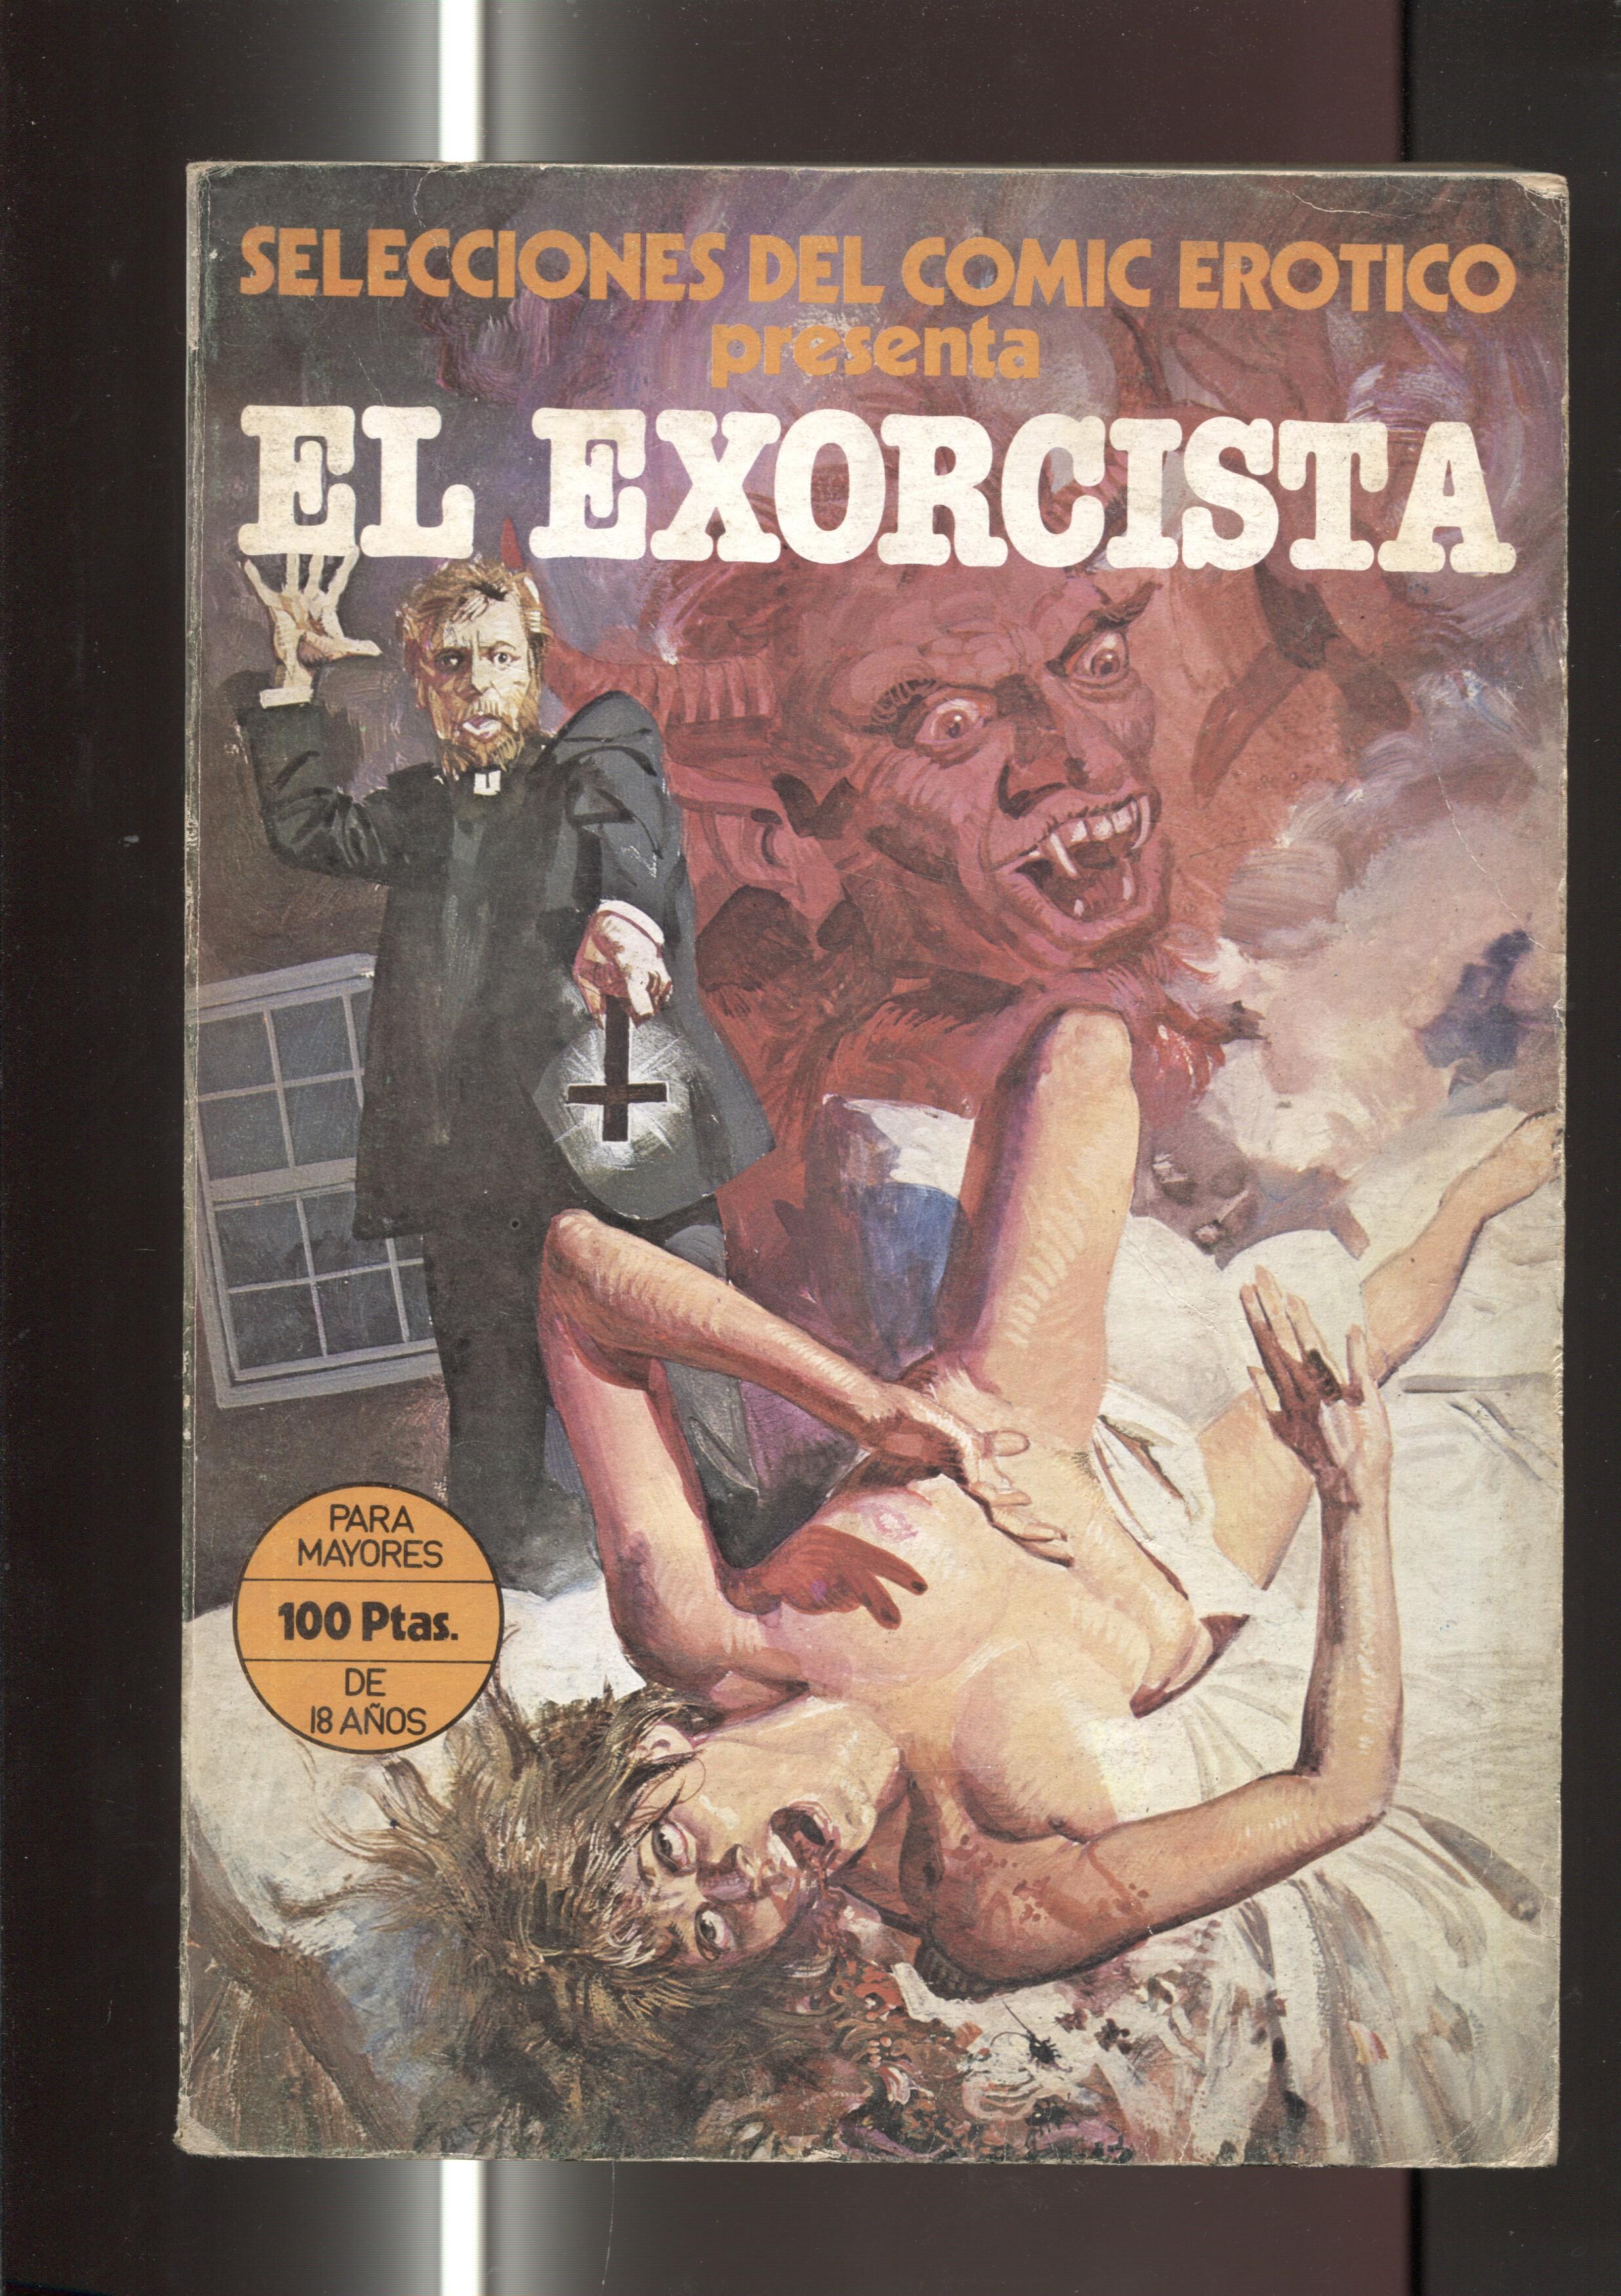 Selecciones del comic erotico: El exorcista (numerado 1 en interior)